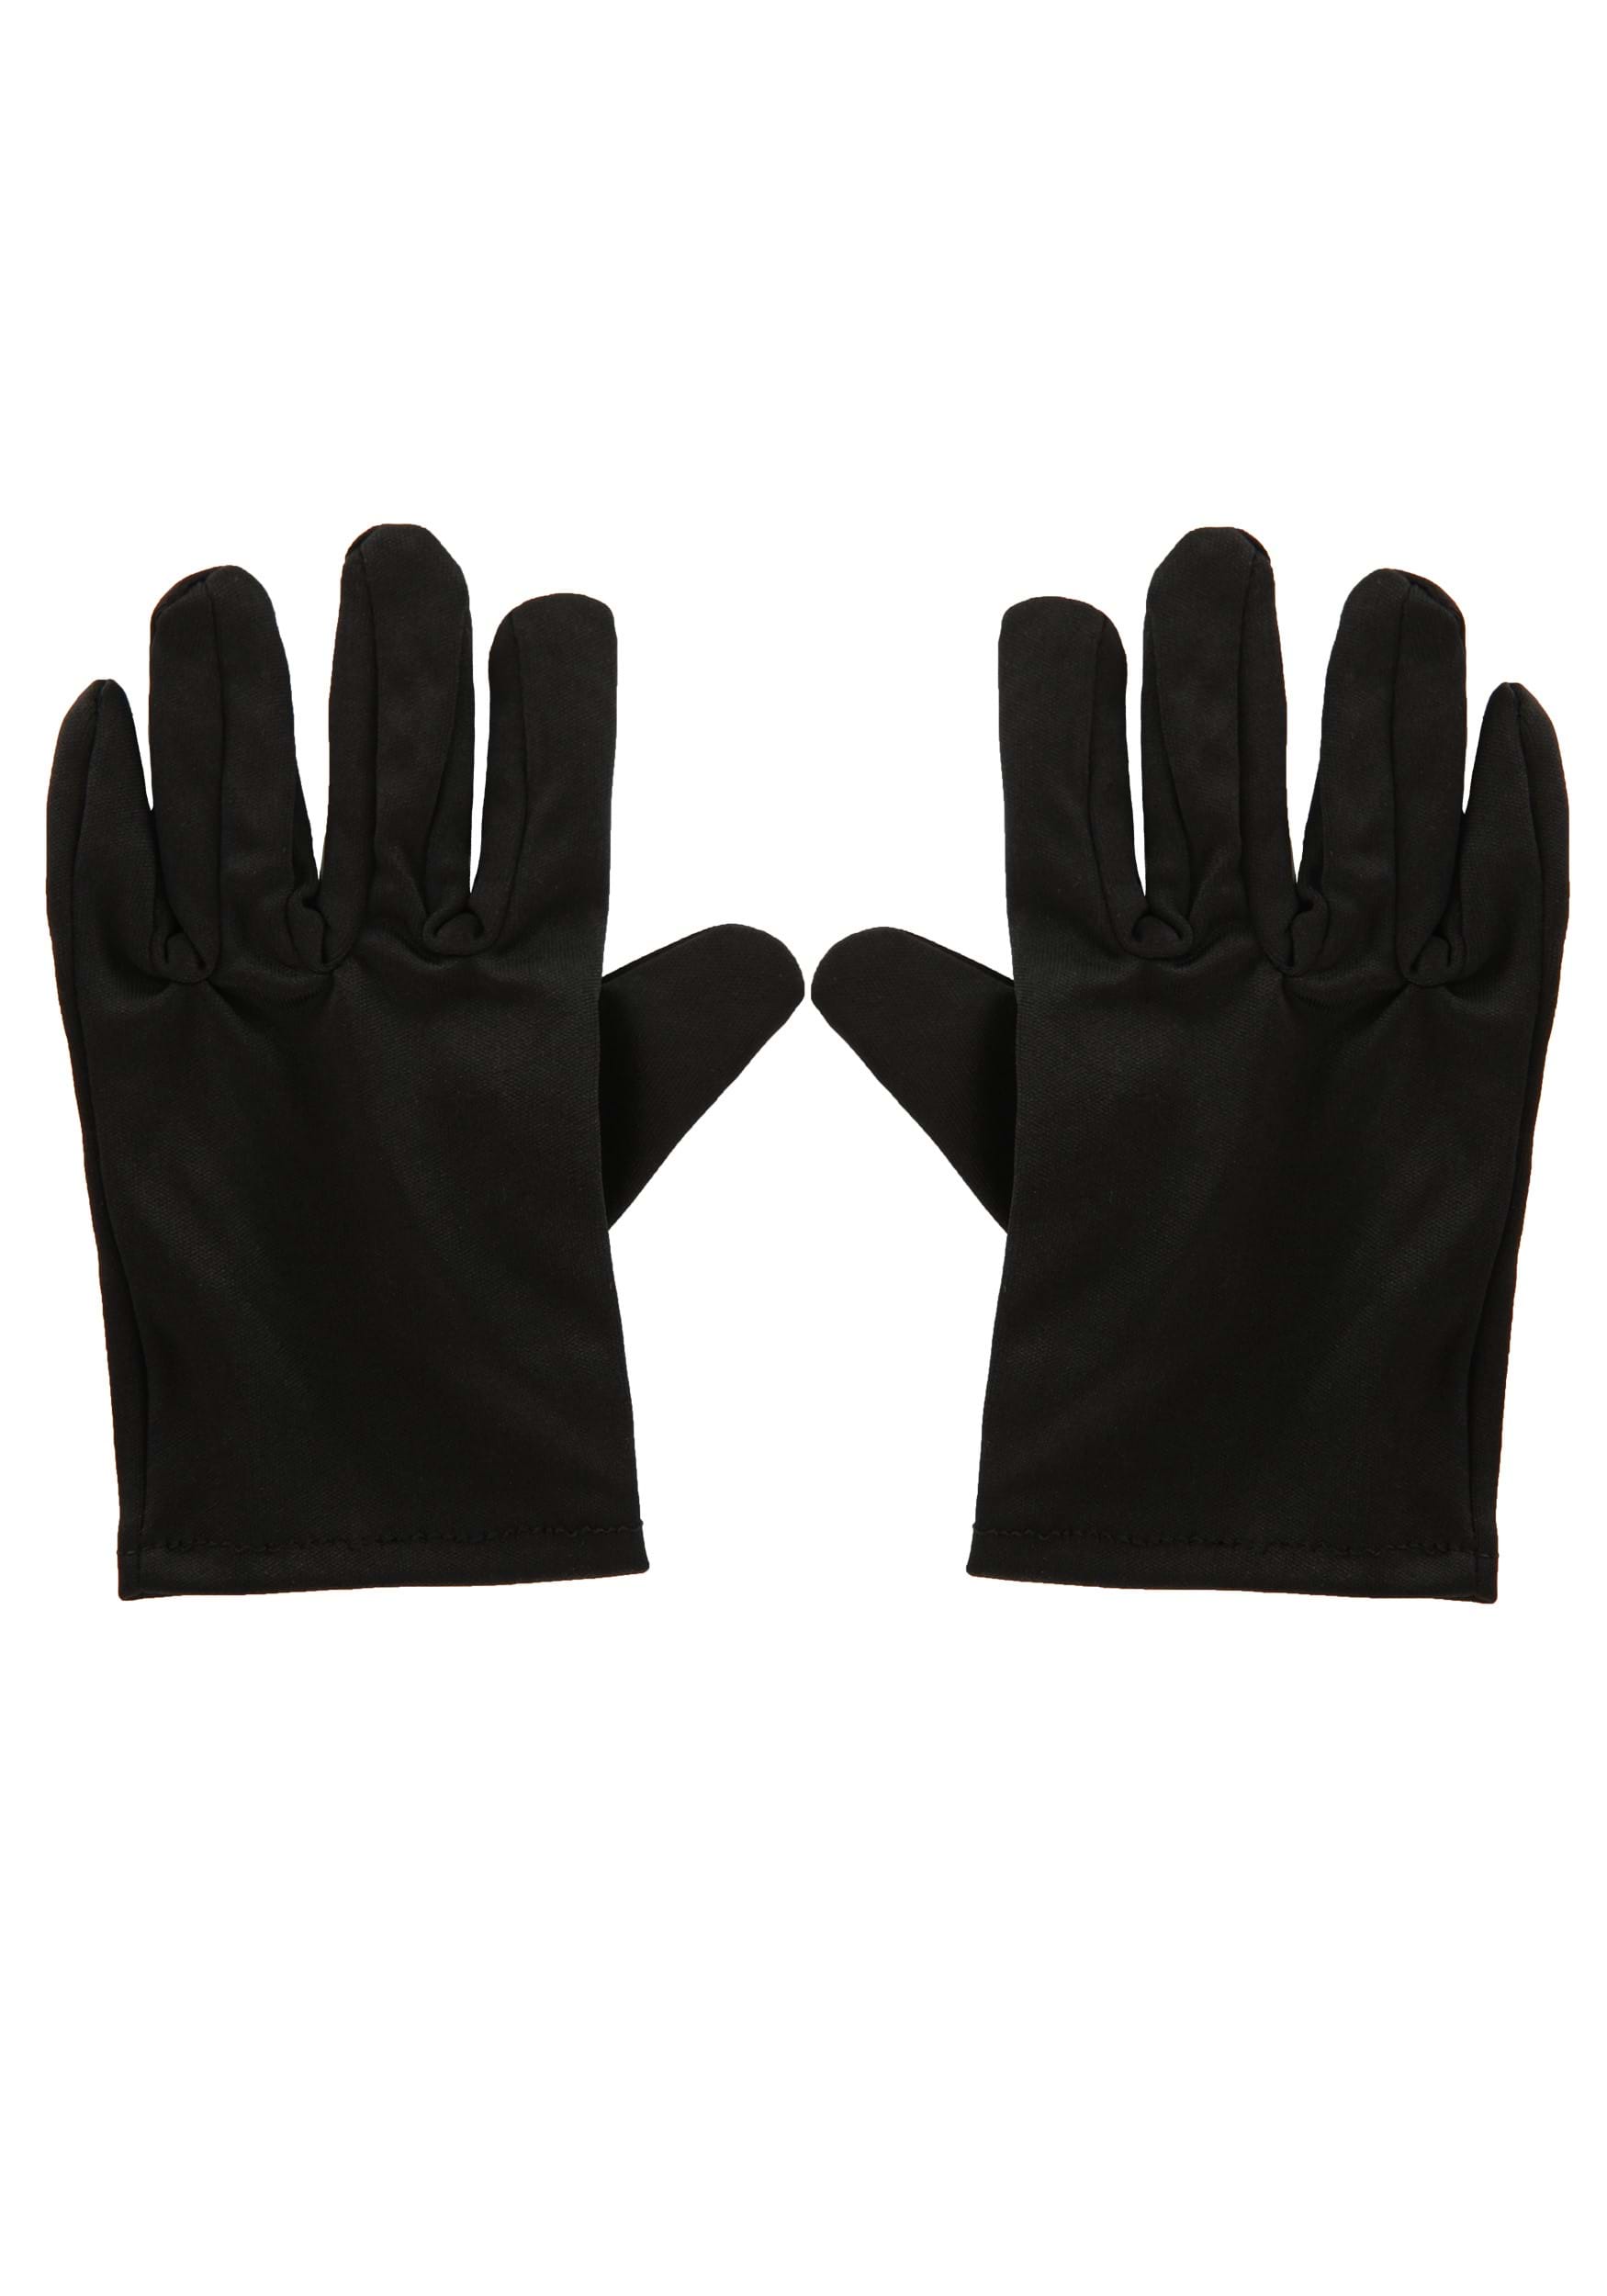 Black Costume Gloves For Kids